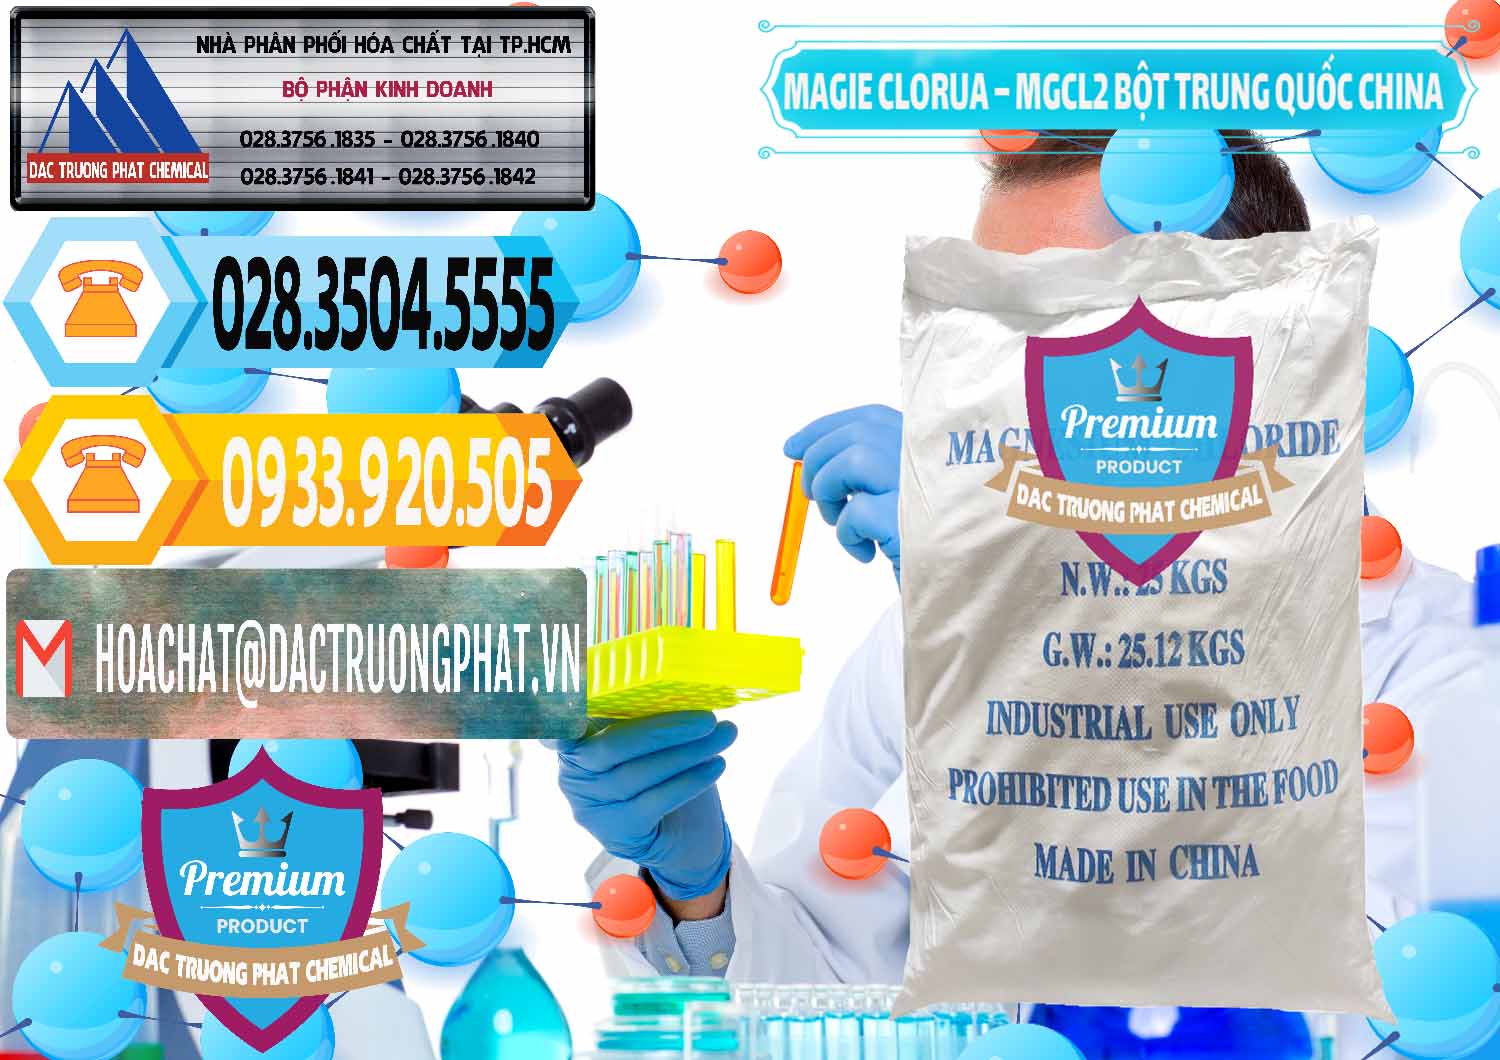 Đơn vị chuyên cung cấp _ bán Magie Clorua – MGCL2 96% Dạng Bột Bao Chữ Xanh Trung Quốc China - 0207 - Công ty phân phối ( nhập khẩu ) hóa chất tại TP.HCM - hoachattayrua.net